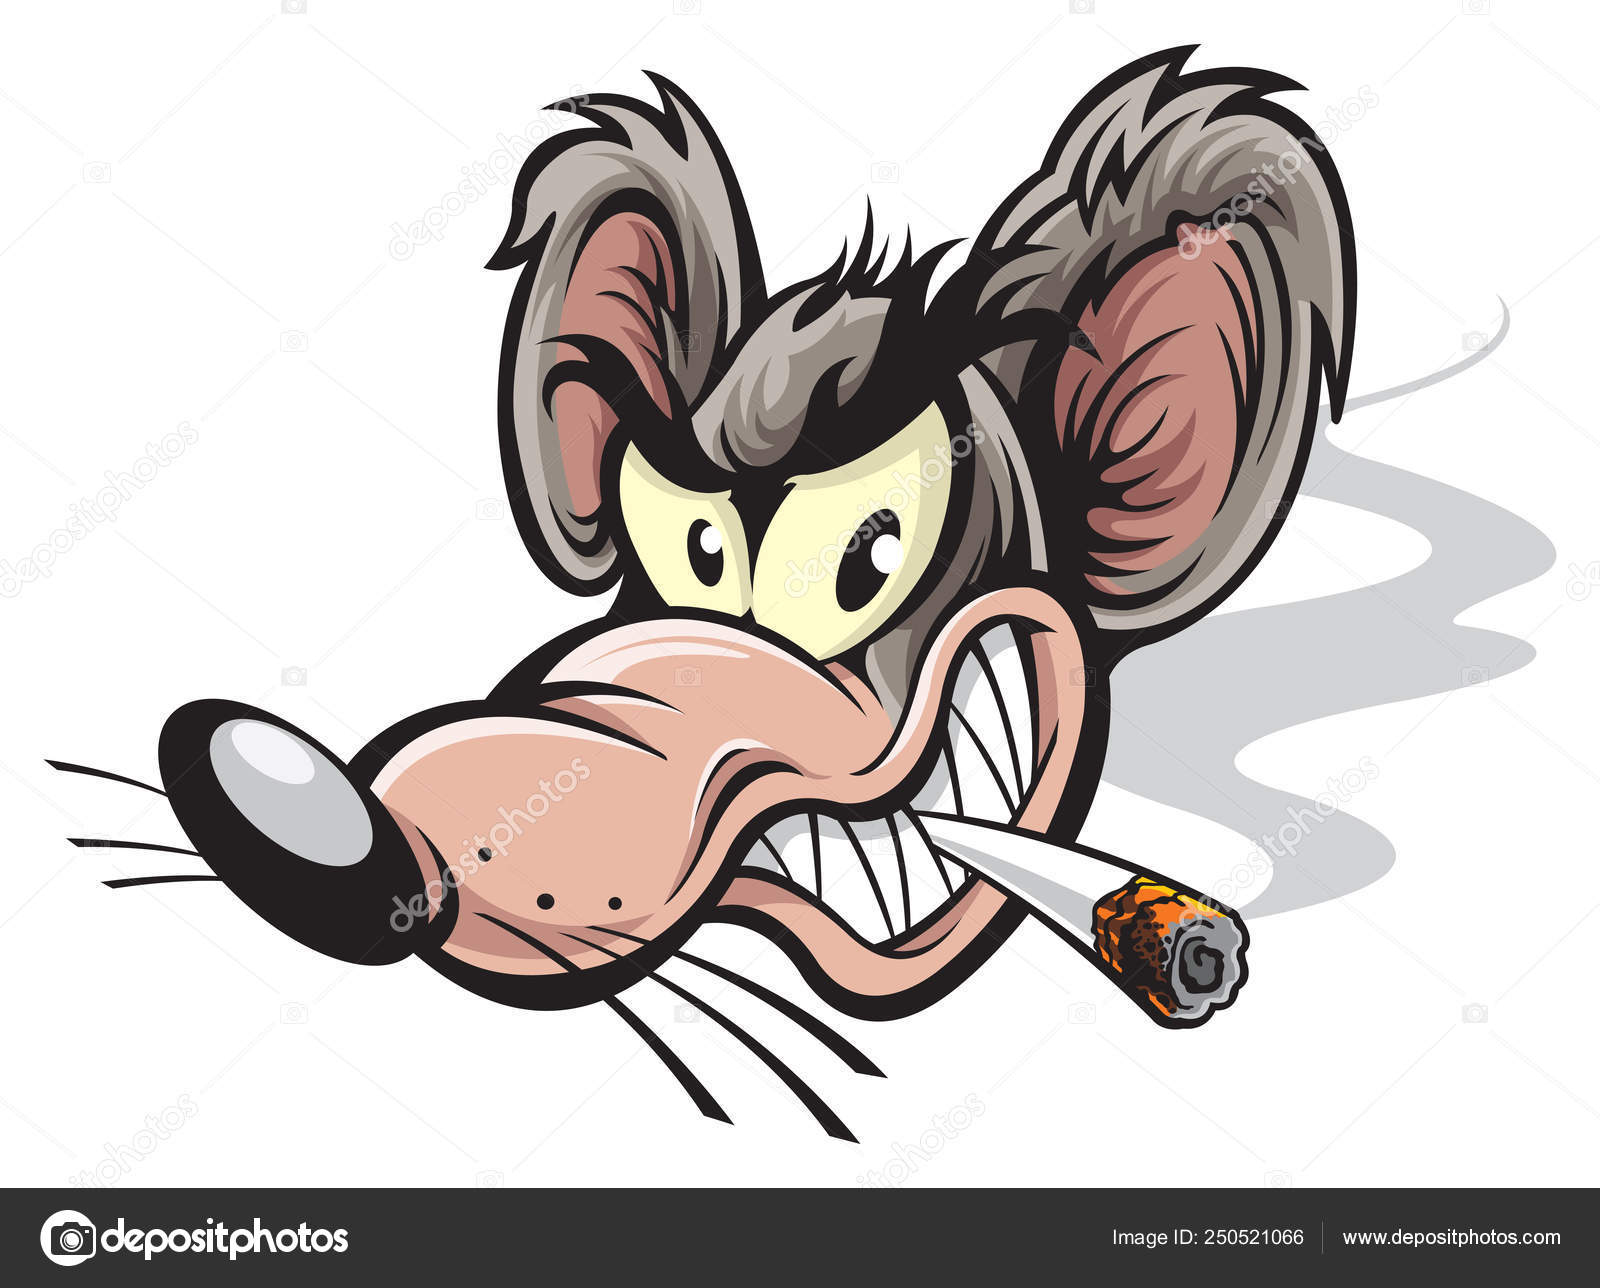 Rato mandrake é sucesso 🔥🐀 #artenotiktok #art #ilustração